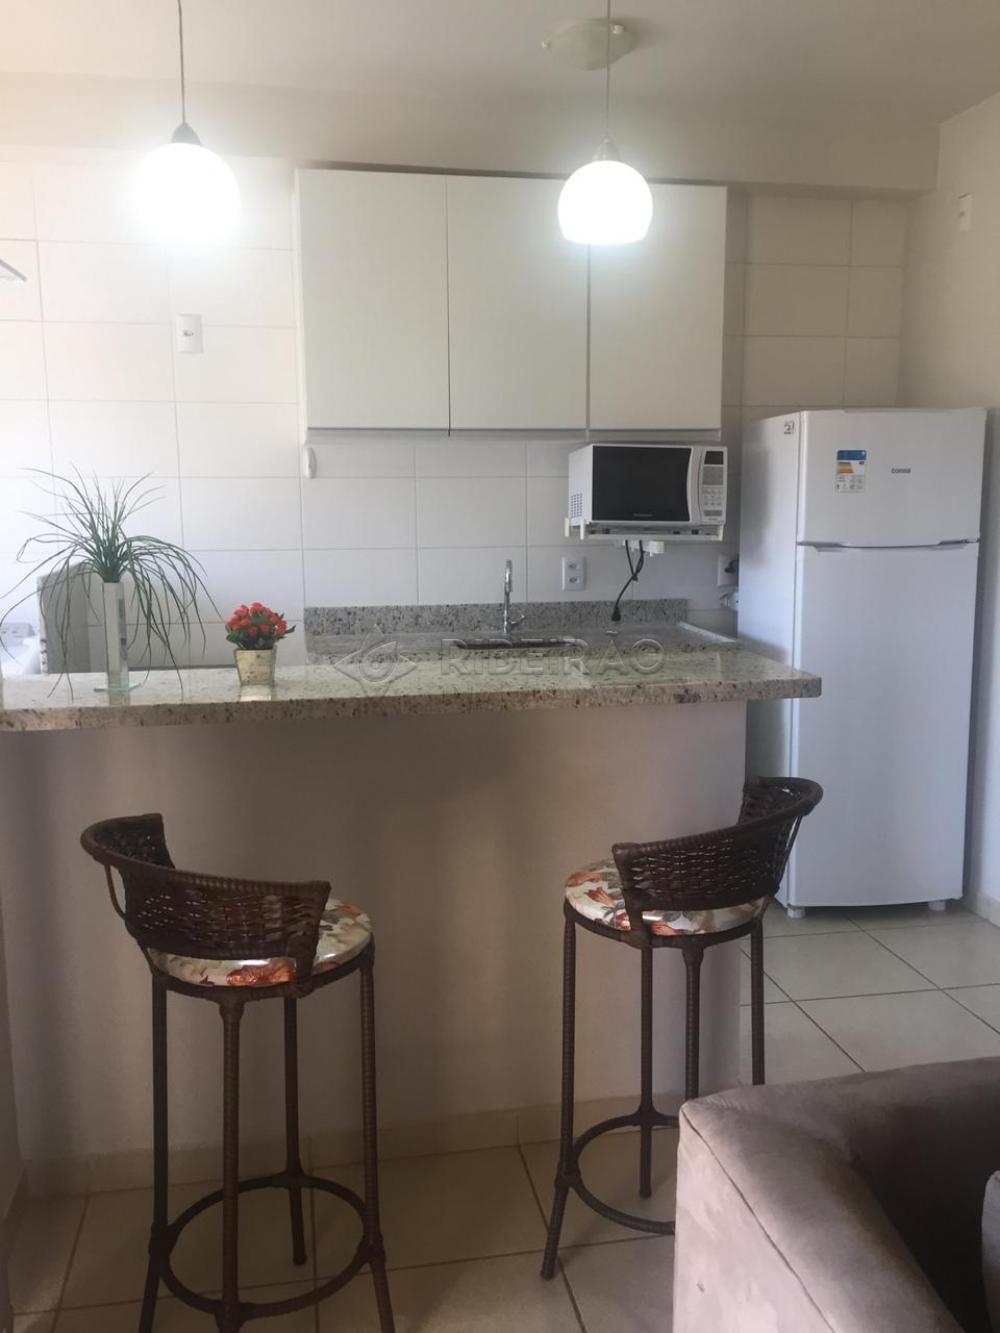 Comprar Apartamento / Flat / Loft / Kitnet em Ribeirão Preto R$ 269.000,00 - Foto 4